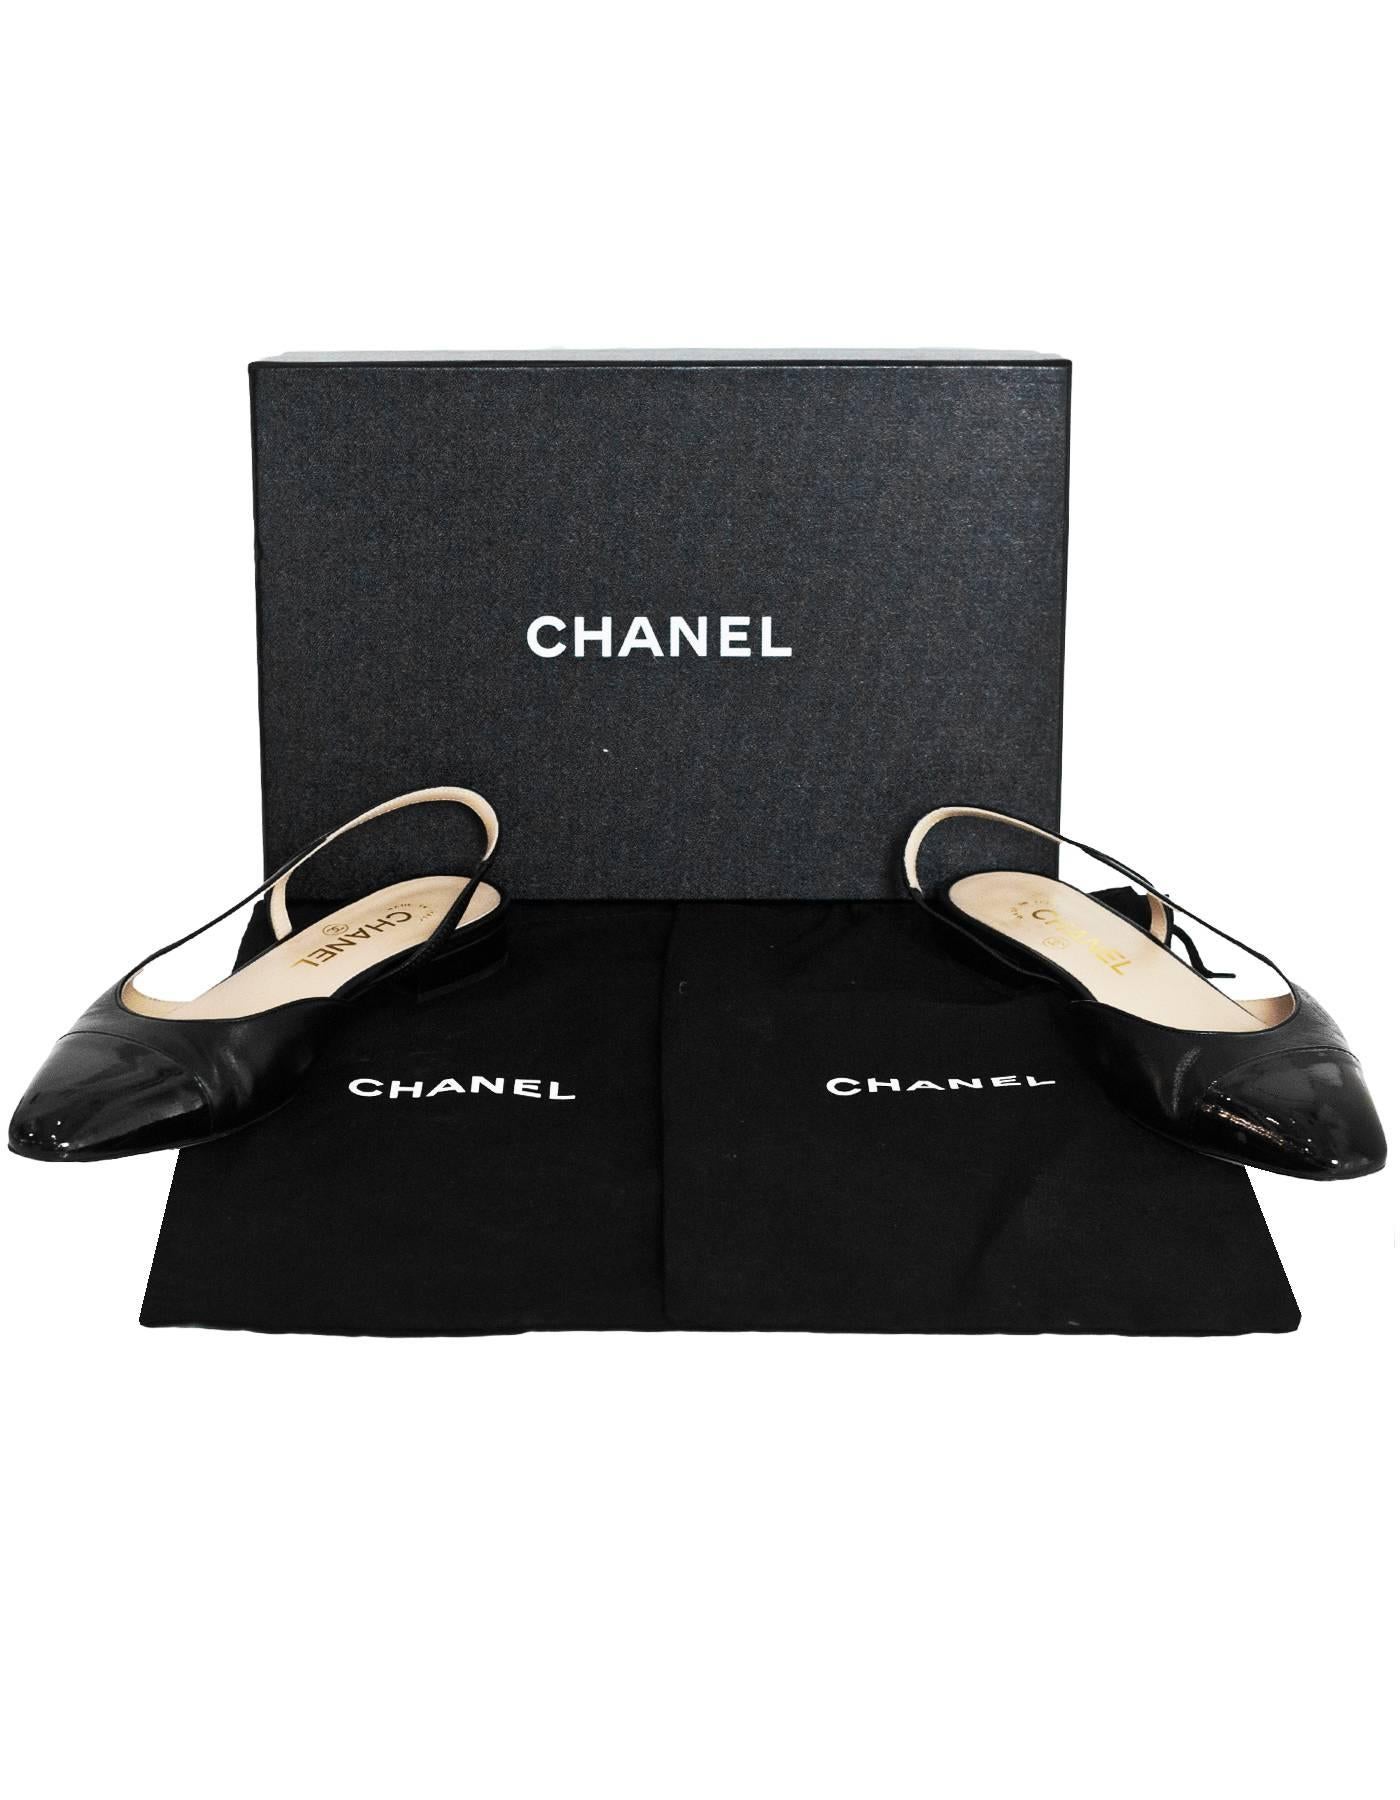 Chanel 2017 Black Leather Sling Backs sz 37.5 2